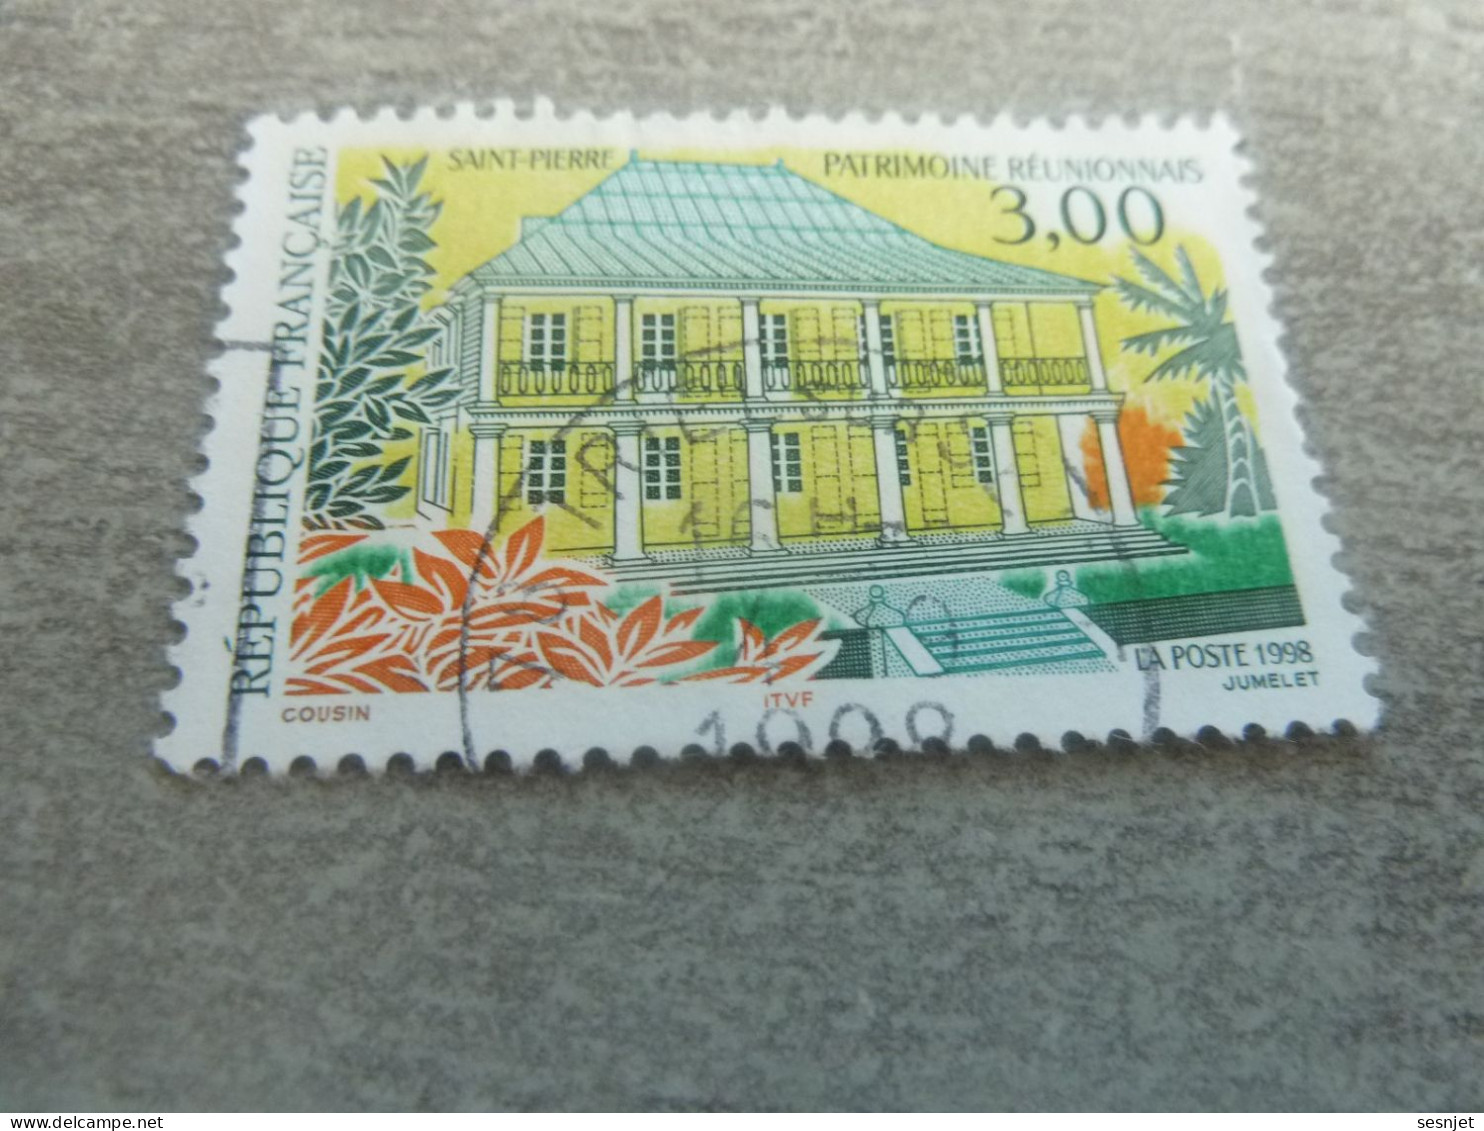 Saint-Pierre - Patrimoine Réunionnais - 3f. - Yt 3144 - Multicolore - Oblitéré - Année 1998 - - Usati